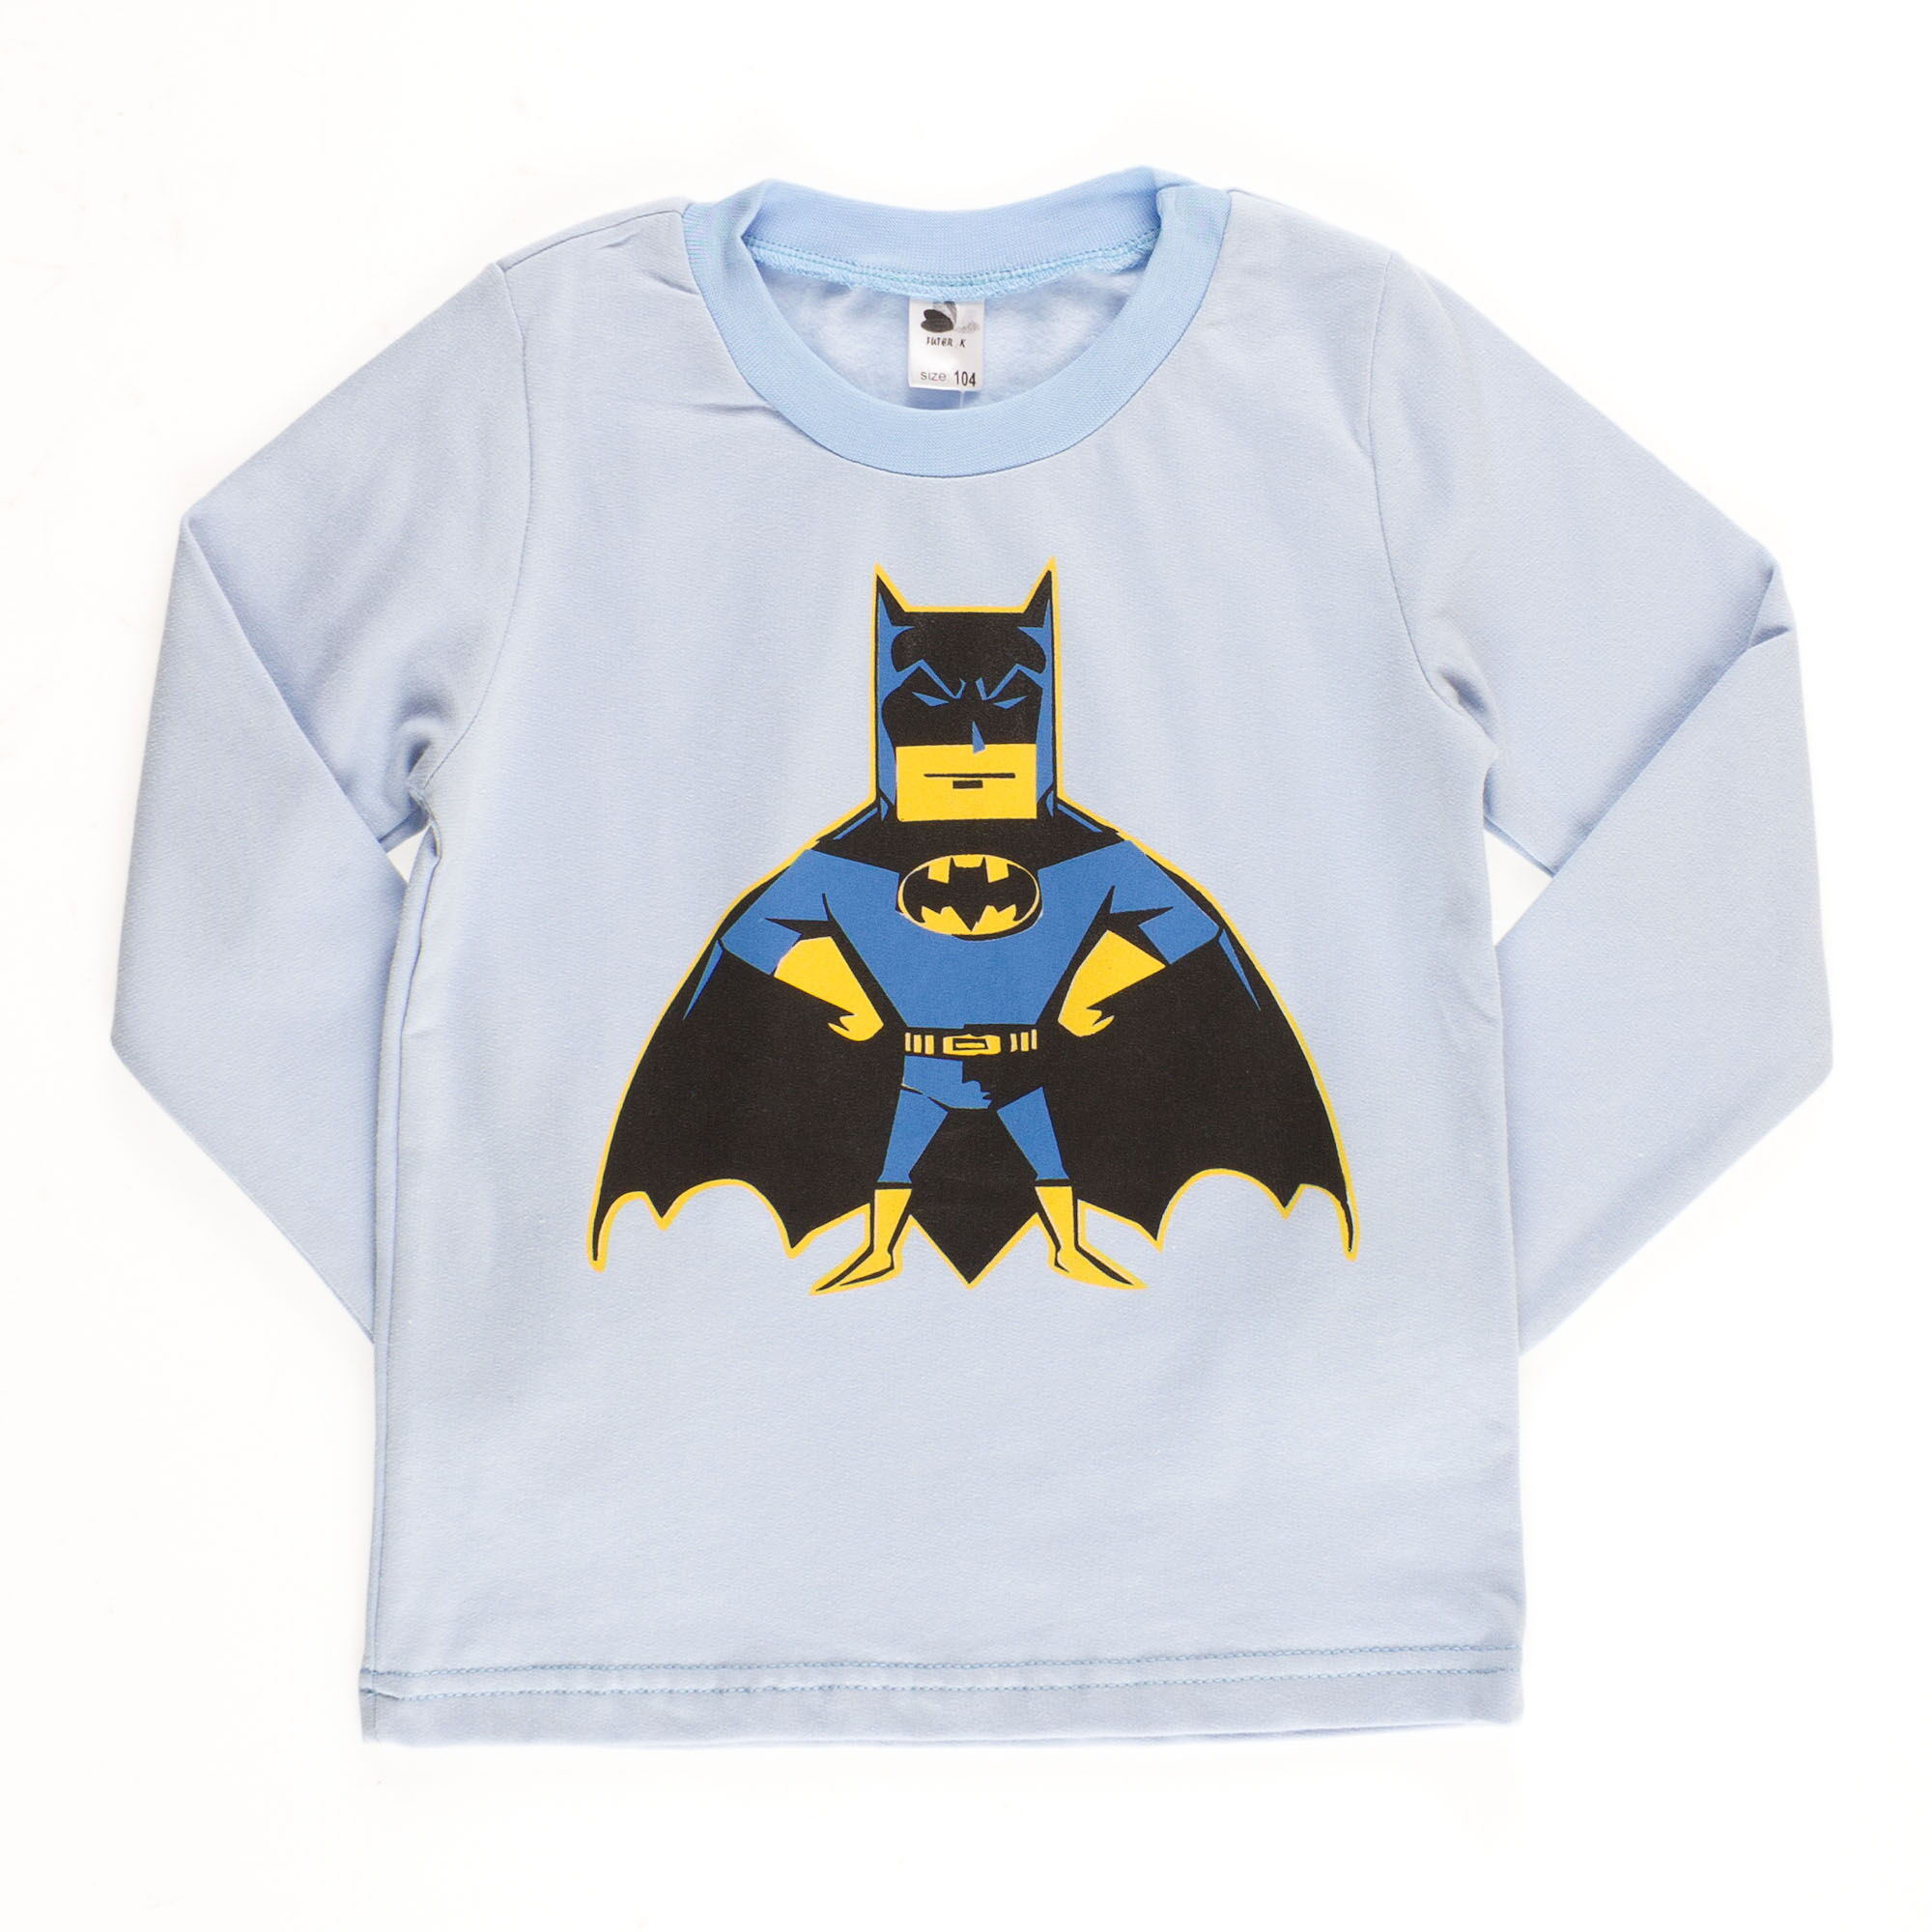 Пижама утепленная для мальчика Valeri tex Бетмен голубая 1626-55-155 - Киев